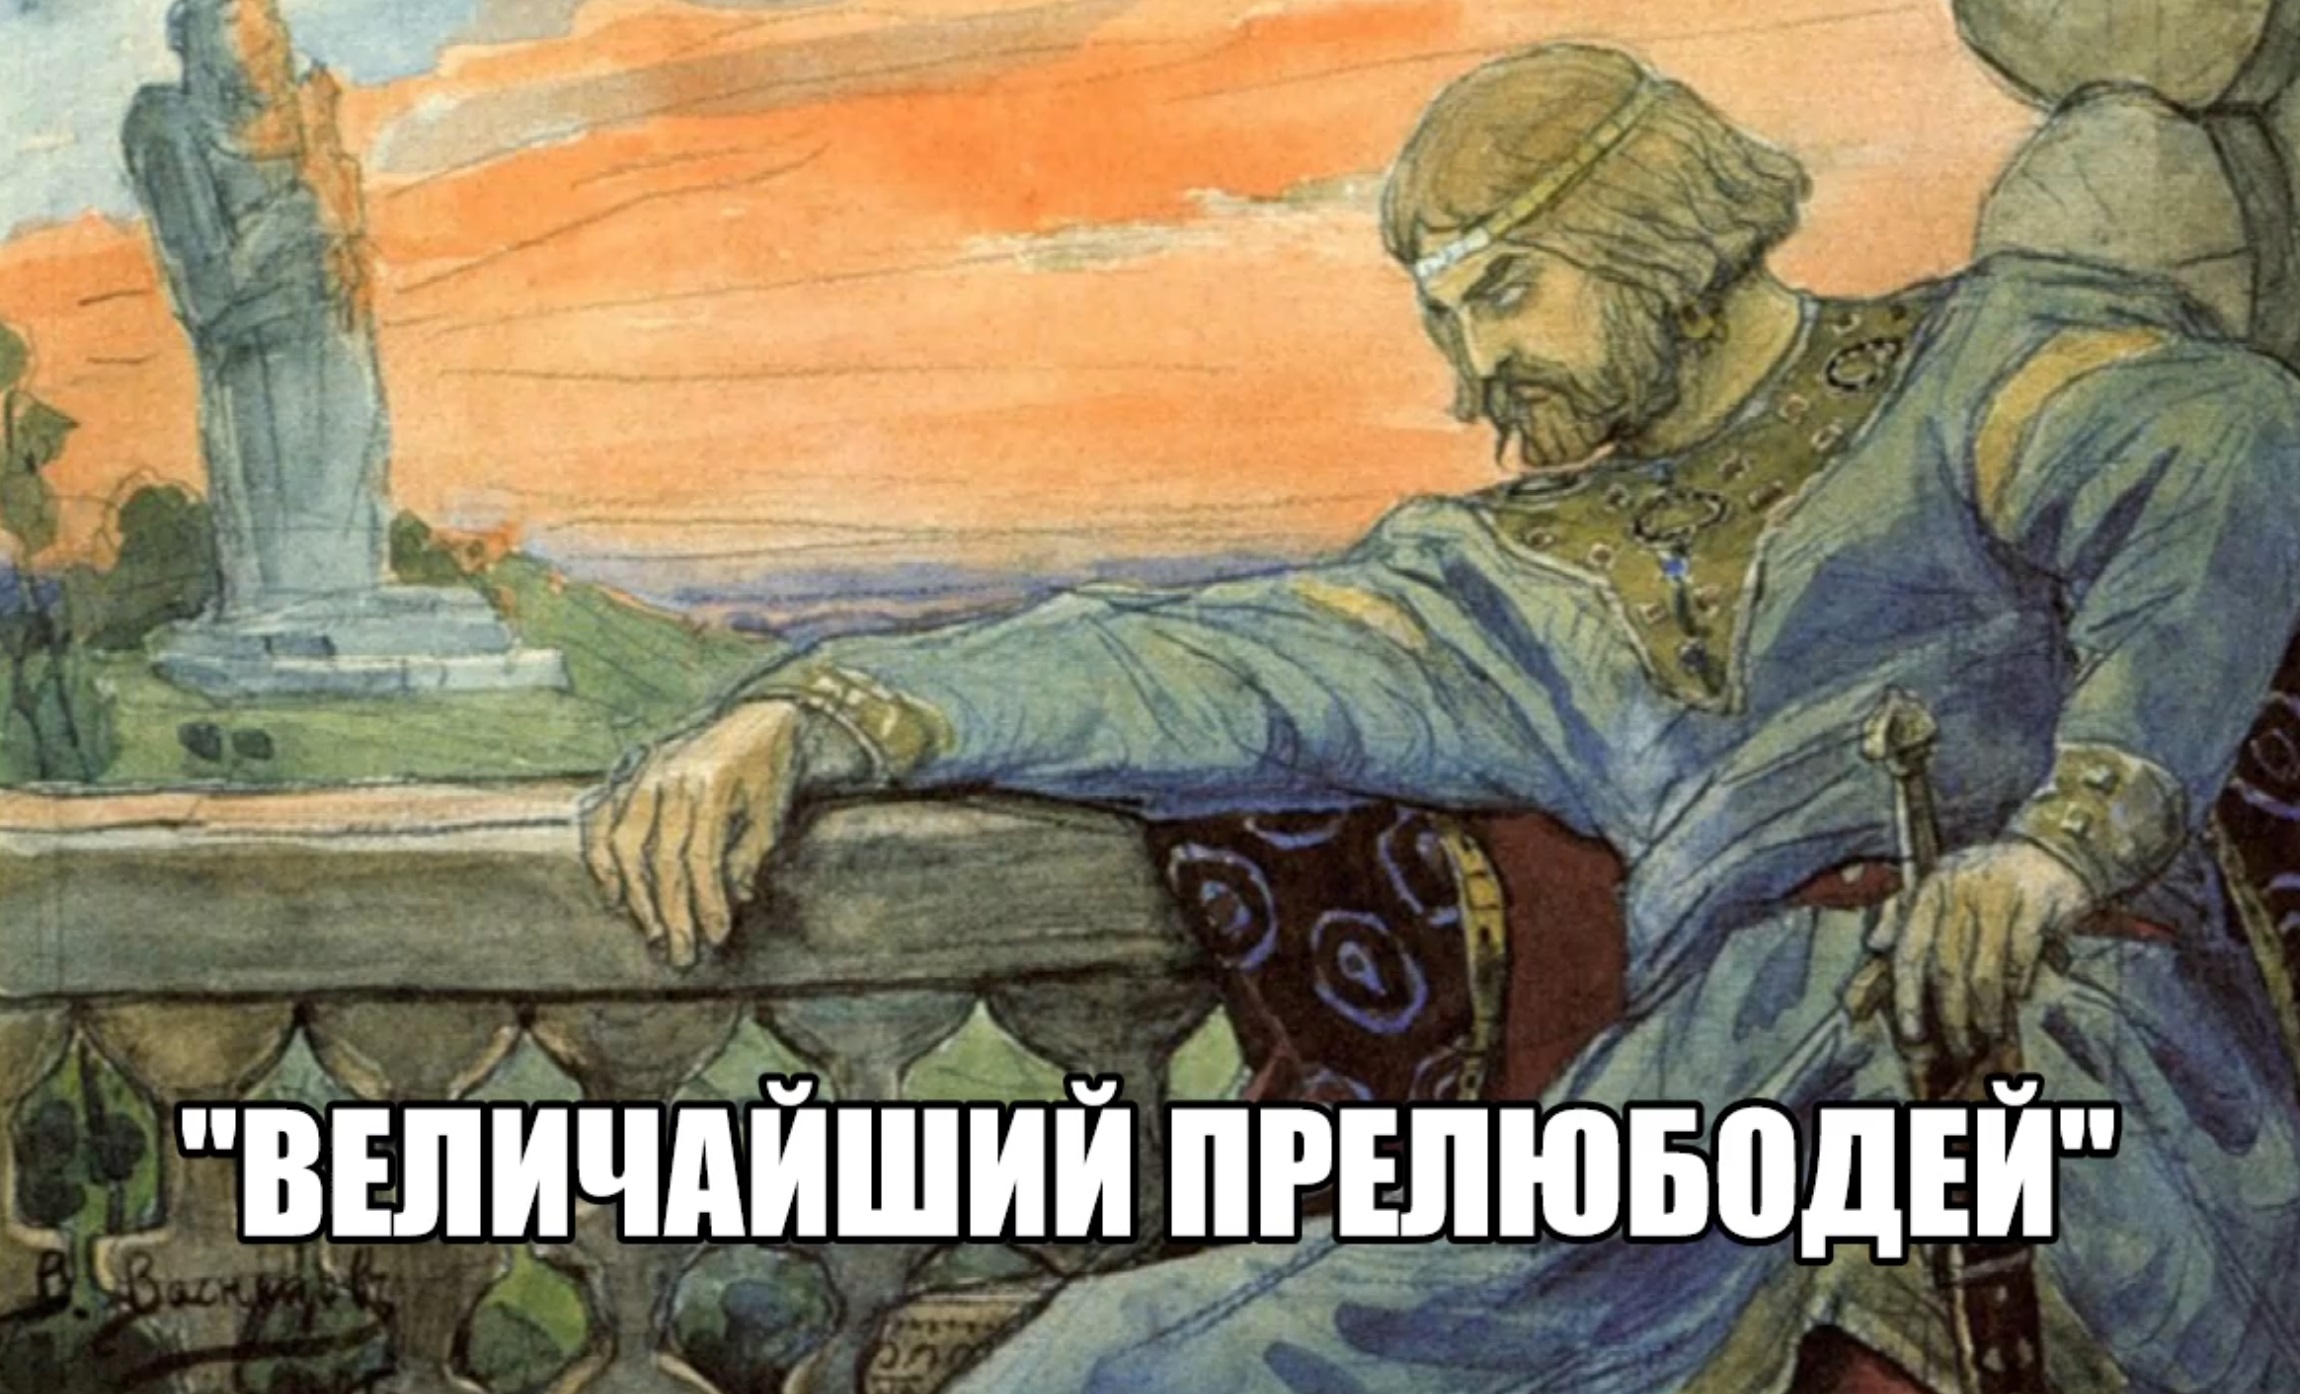 Князь Владимир Святославович язычник